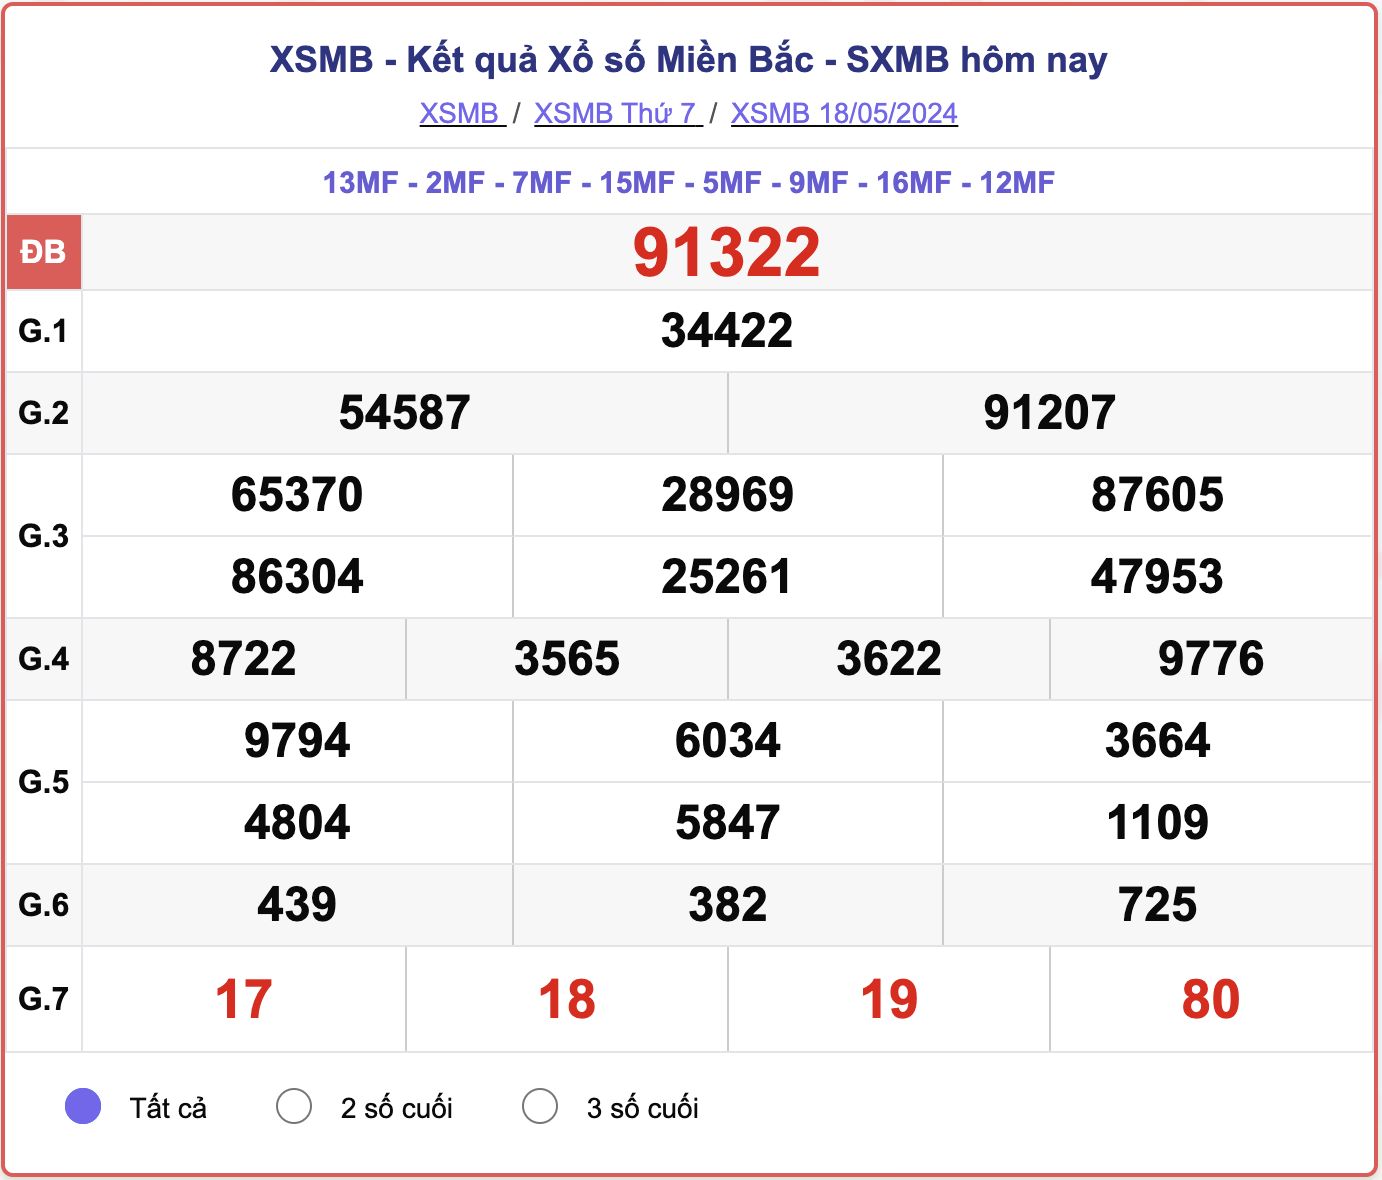 XSMB 23/5 - Kết quả xổ số miền Bắc hôm nay 23/5/2024 - KQXSMB ngày 23/5- Ảnh 6.